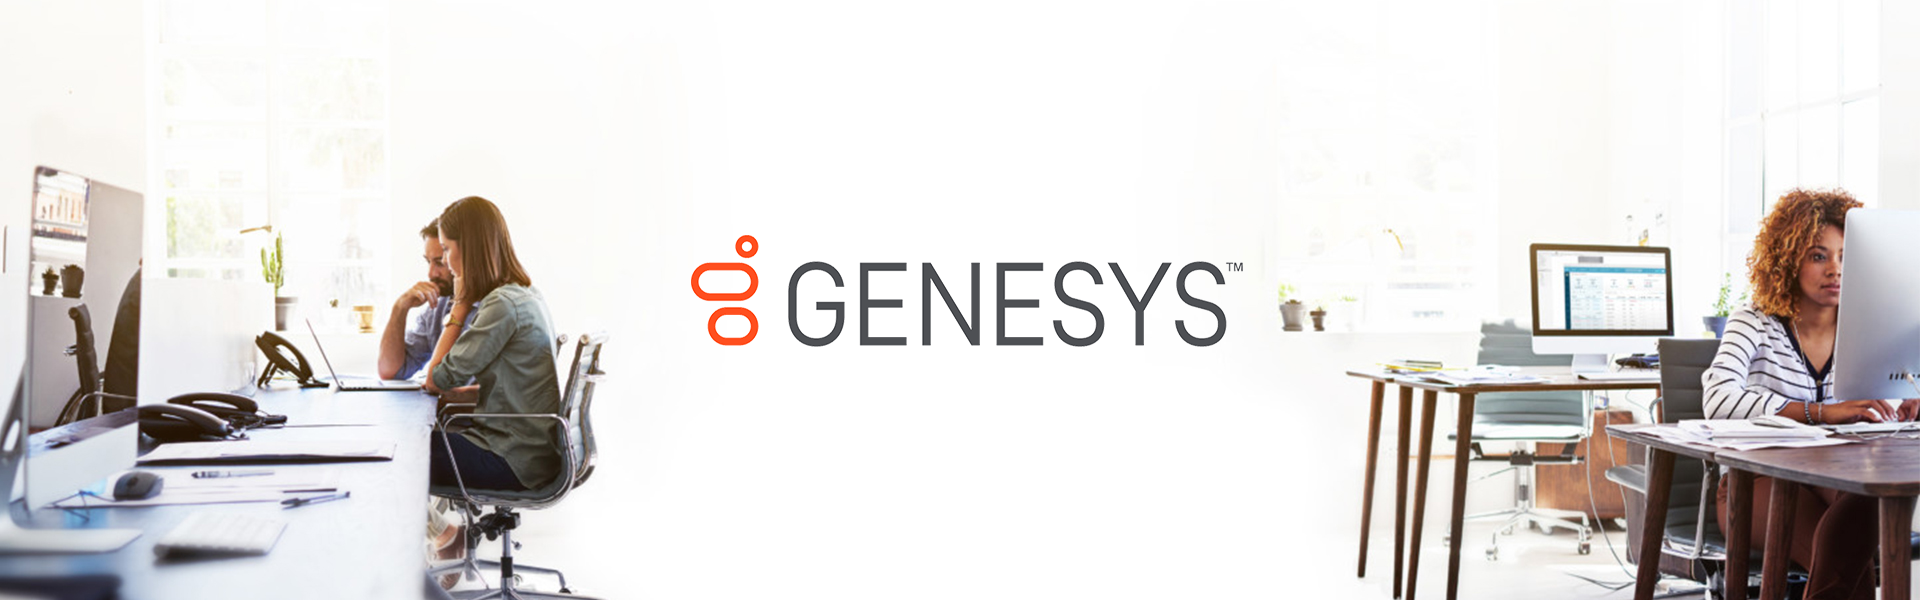 Opiniones Genesys PureCloud: Plataforma de centro de contacto - Appvizer